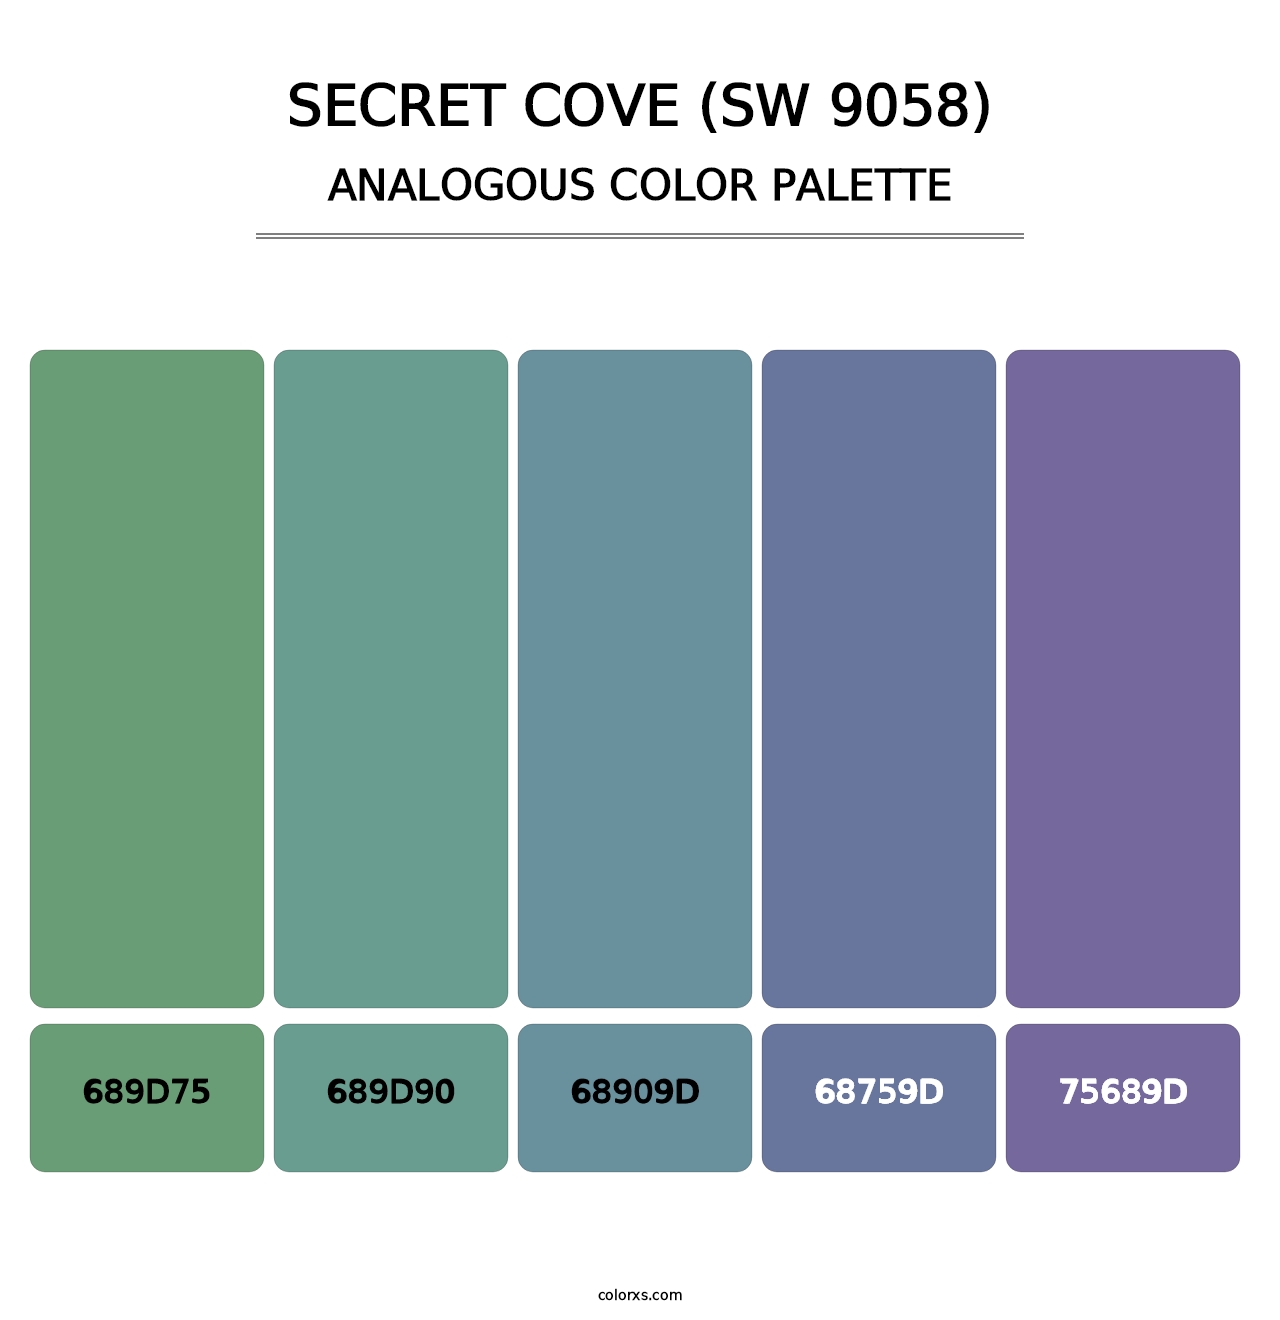 Secret Cove (SW 9058) - Analogous Color Palette